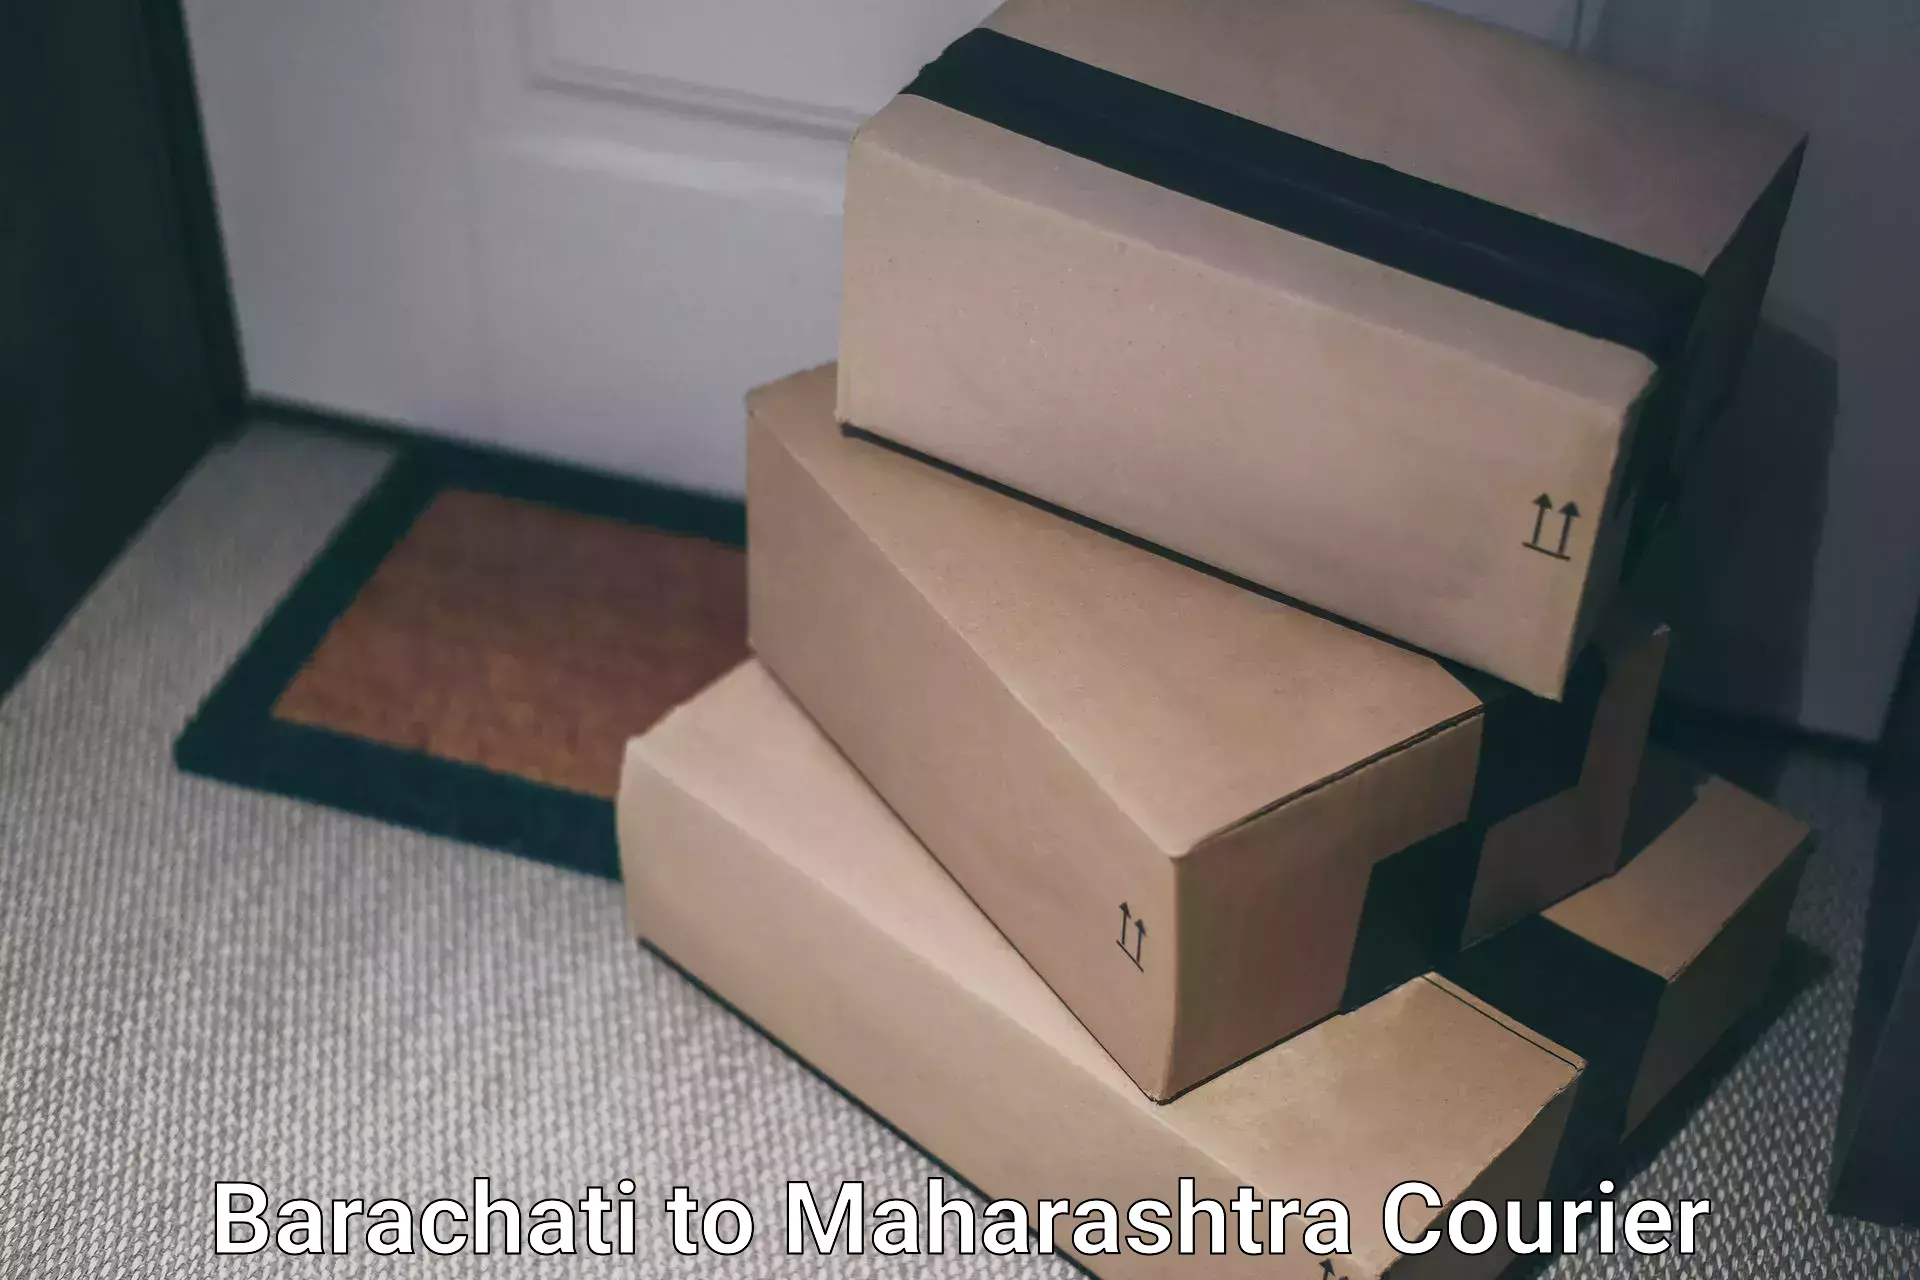 Expedited shipping methods Barachati to Maharashtra